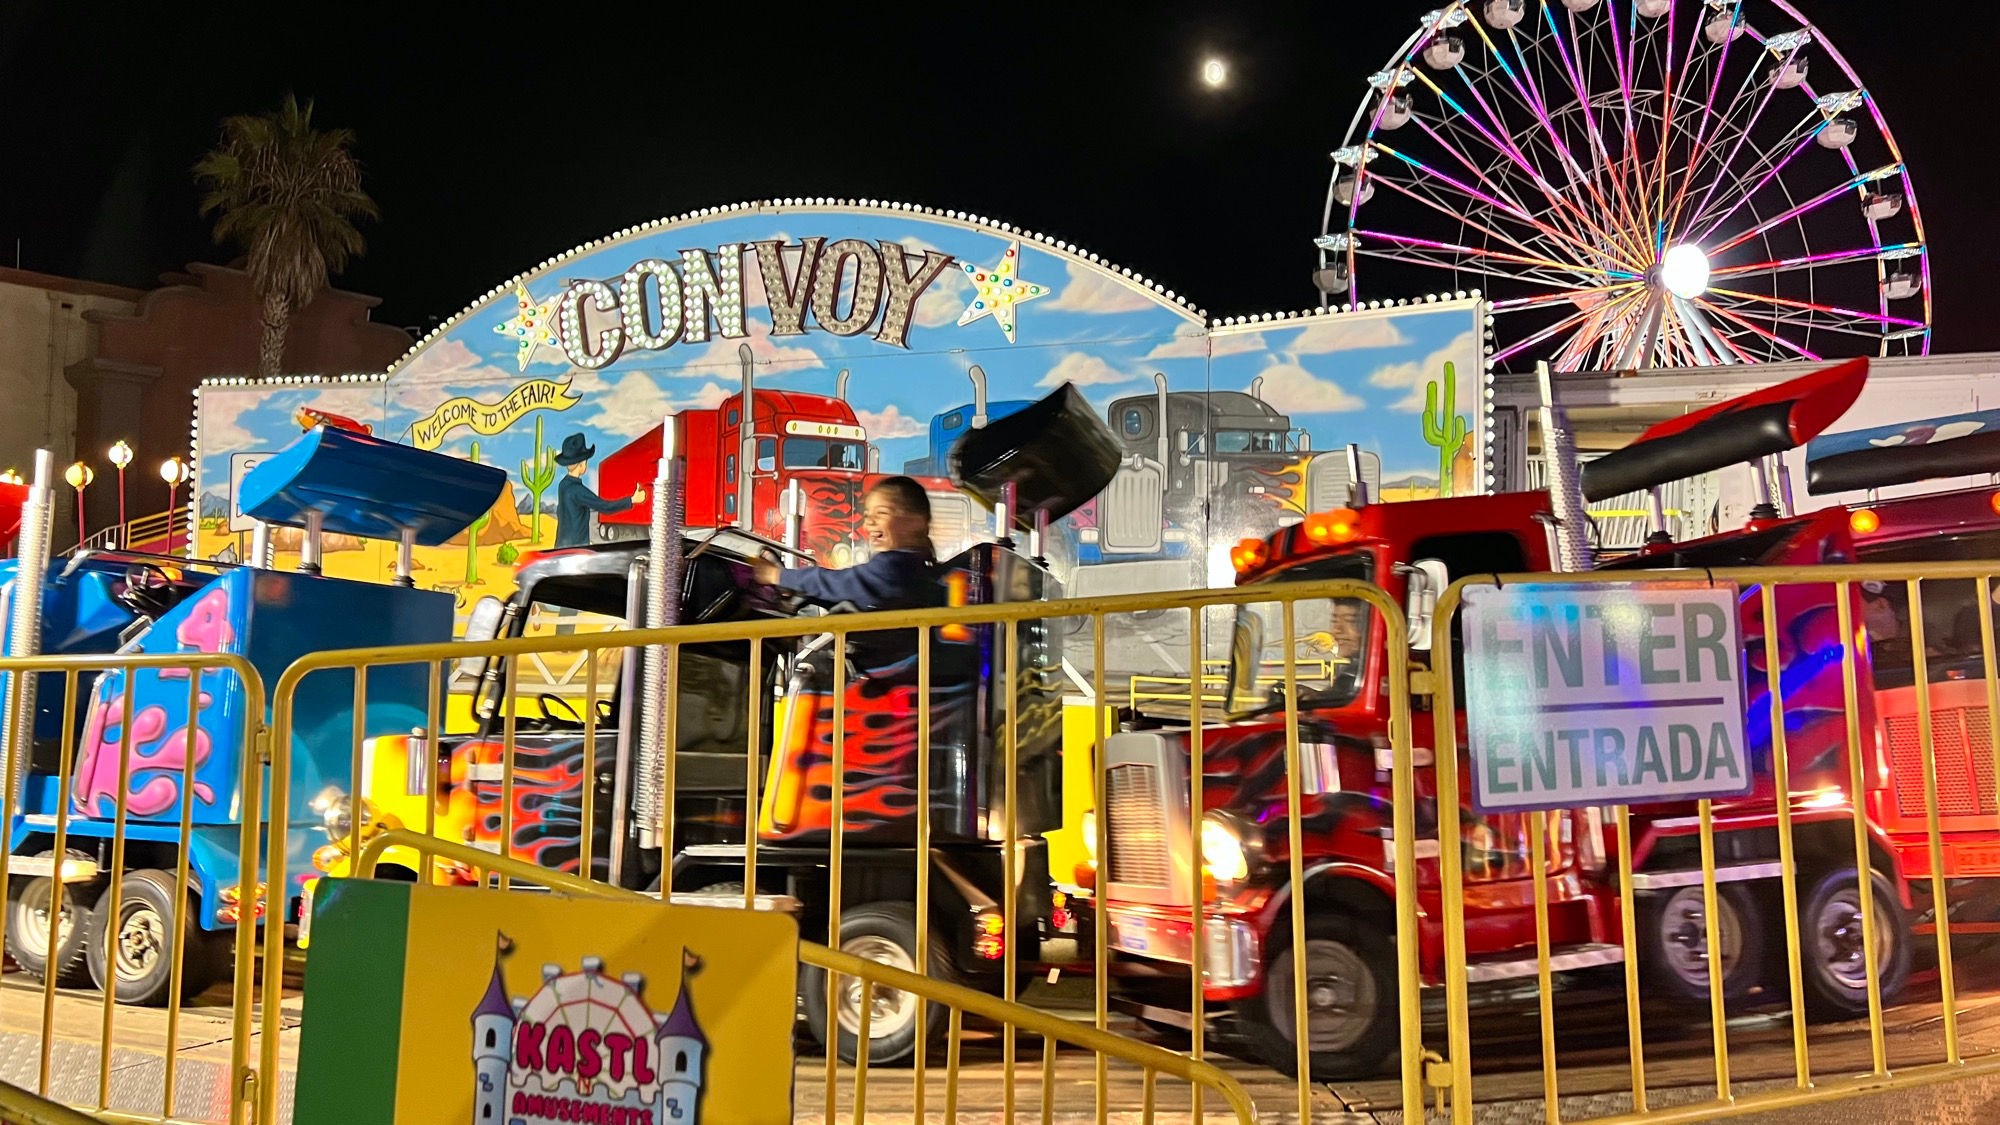 Ventura County Fair Convoy